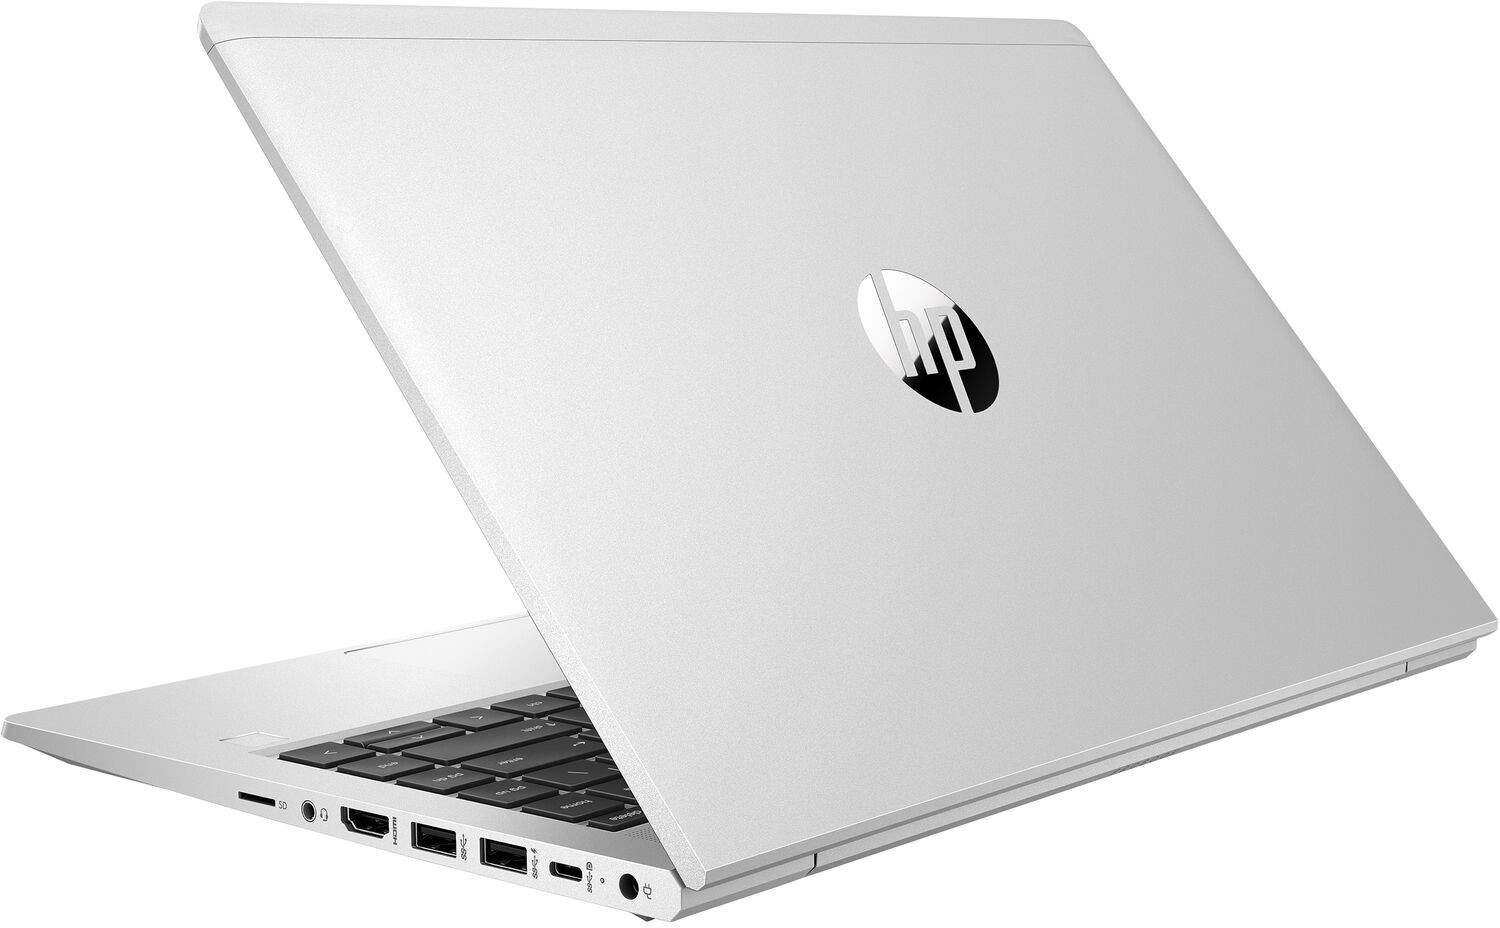 Ноутбук HP ProBook 440 G8 Core i5-1135G7 2.4GHz,14" FHD (1920x1080) AG,8Gb DDR4(1),256Gb SSD,45Wh LL,FPR,1.6kg,1y,Silver,Win10Pro-39334